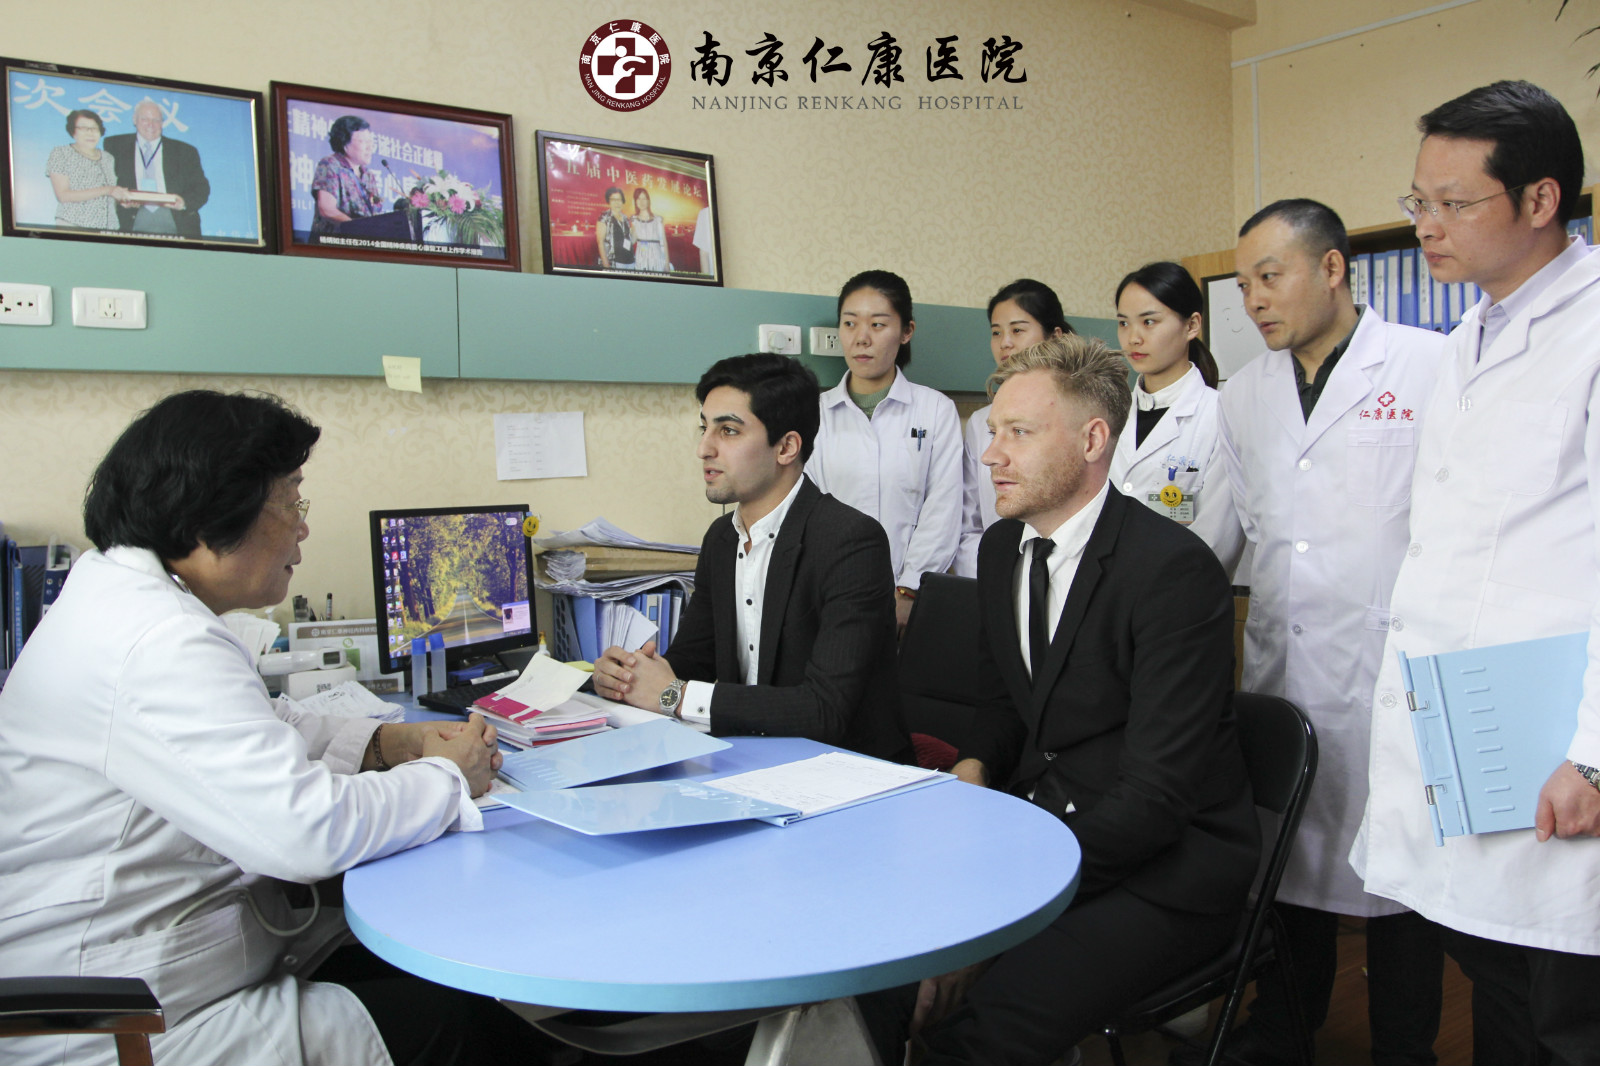 2017中、美、德精神科医学专家在南京神康医院进行全球学术访问